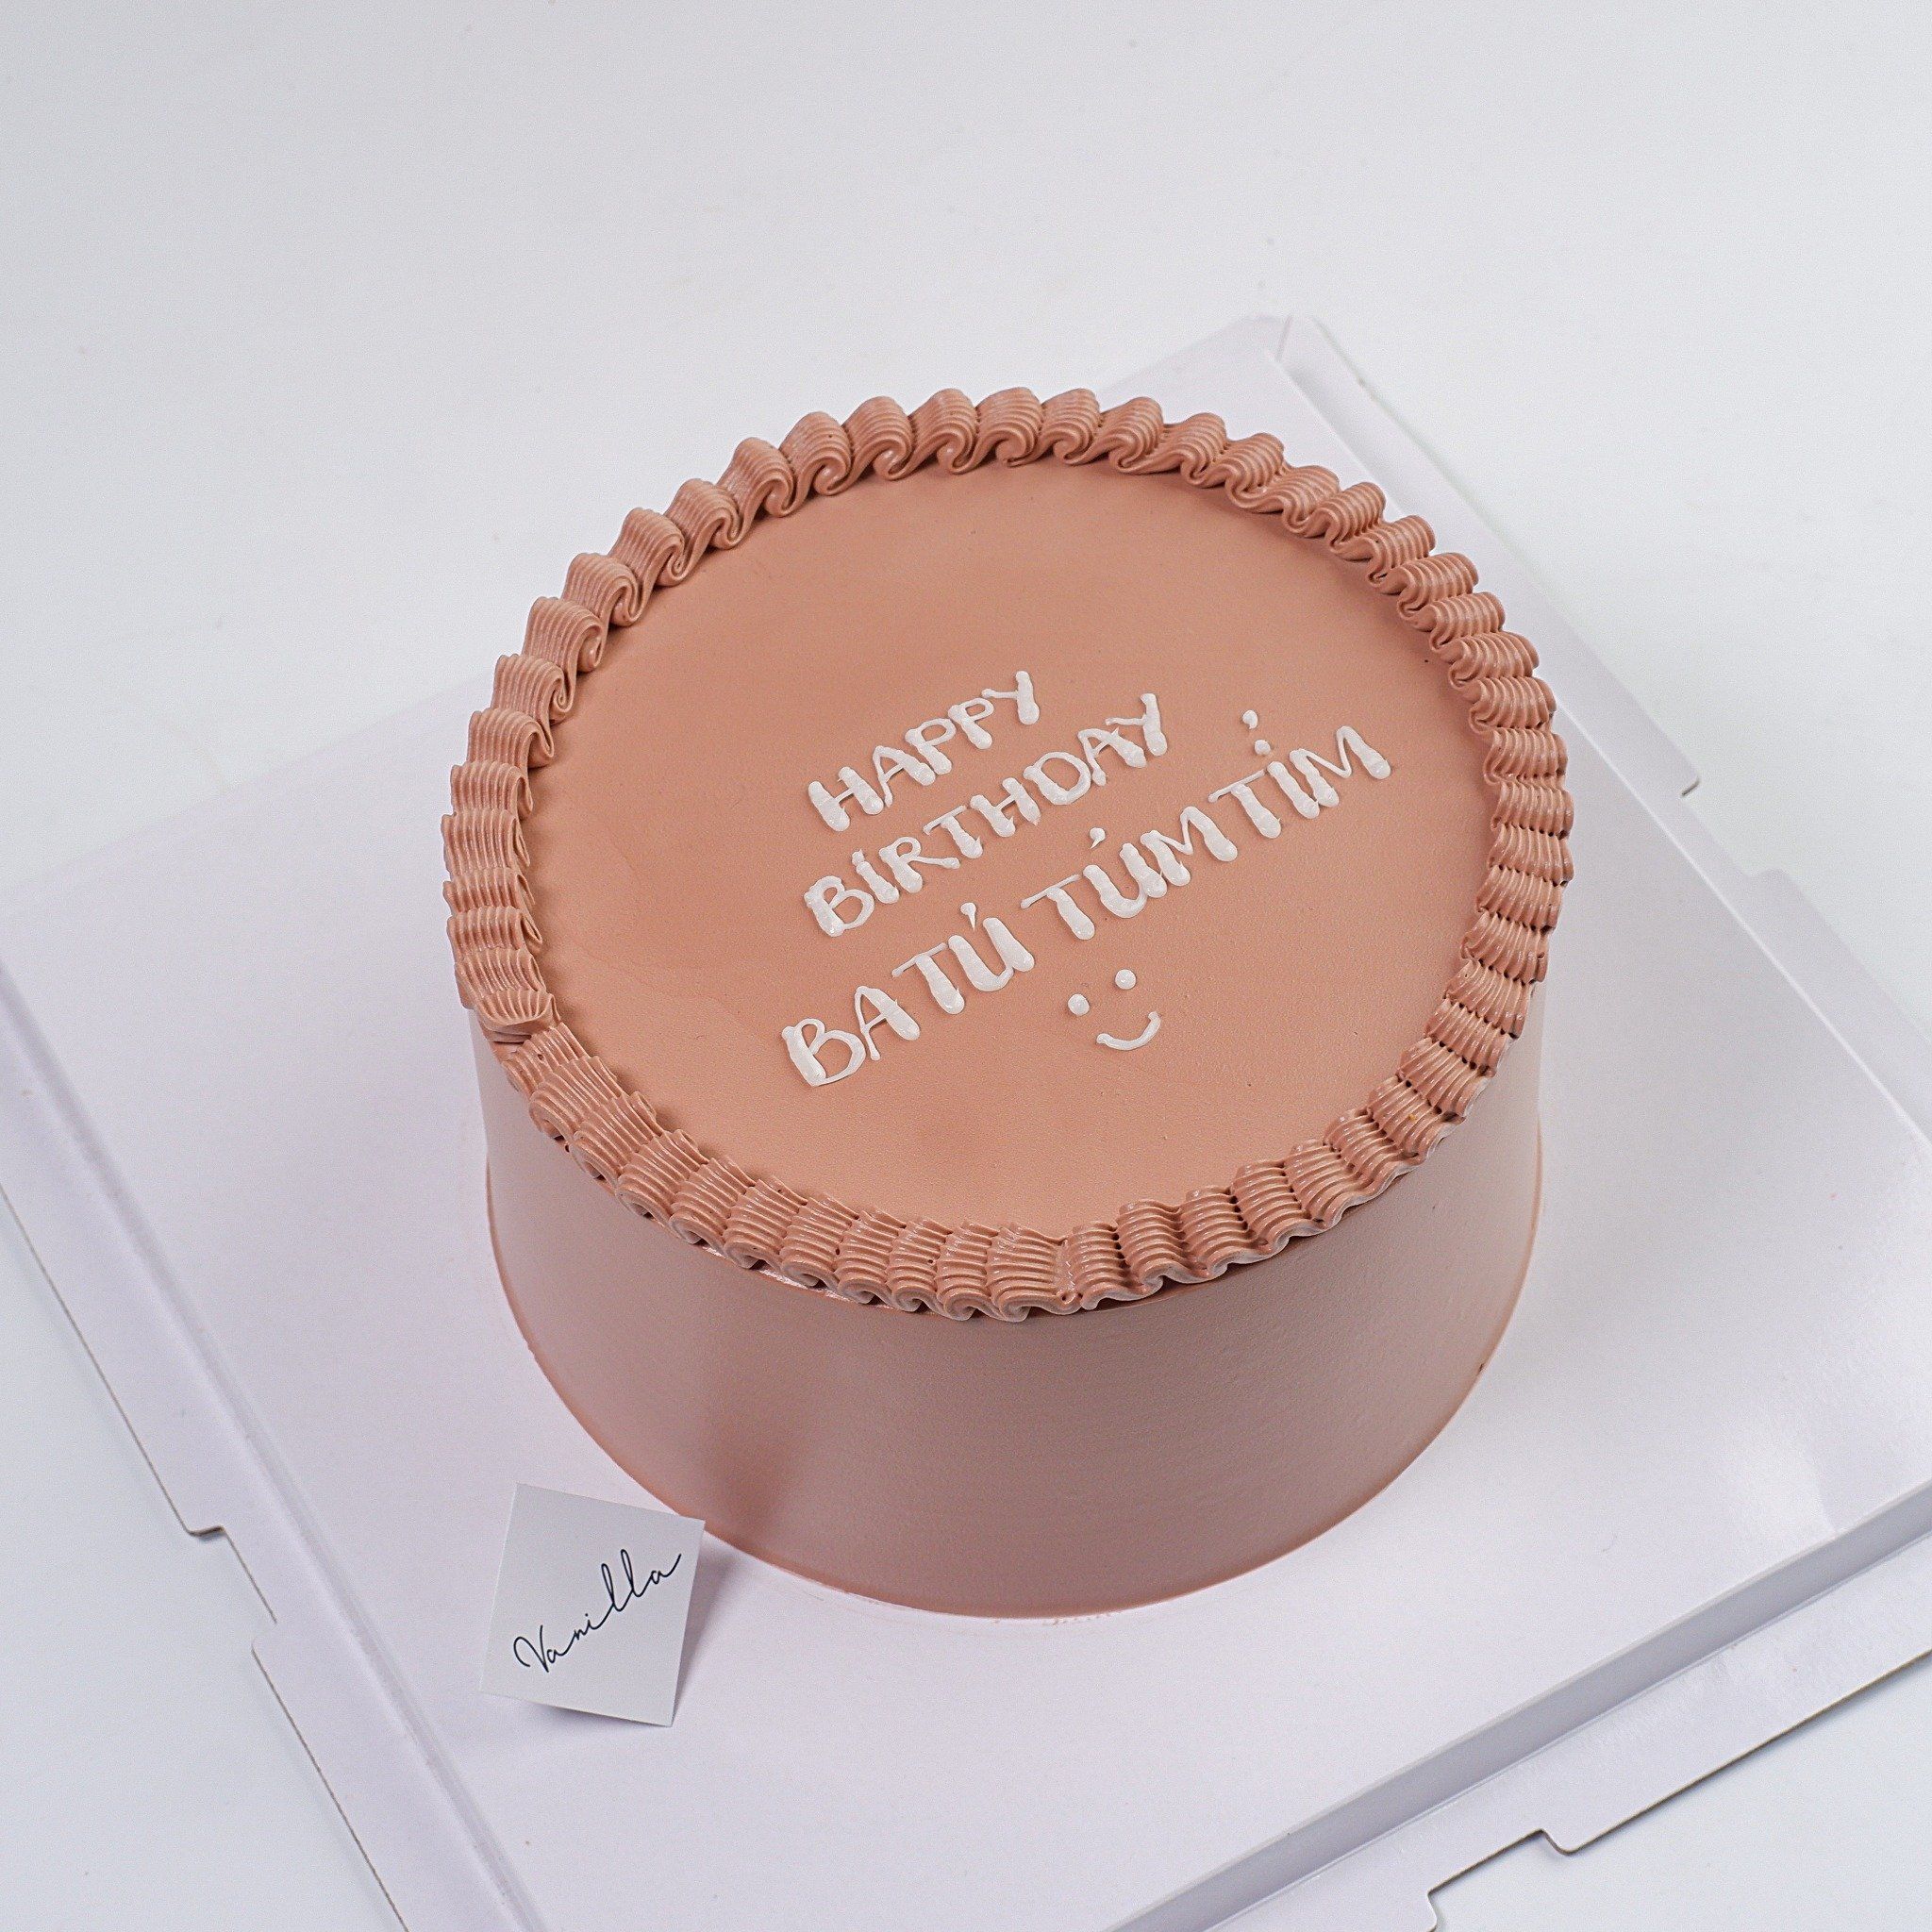  Bánh ghi chữ đơn giản - Bánh kem sinh nhật Đà Nẵng 